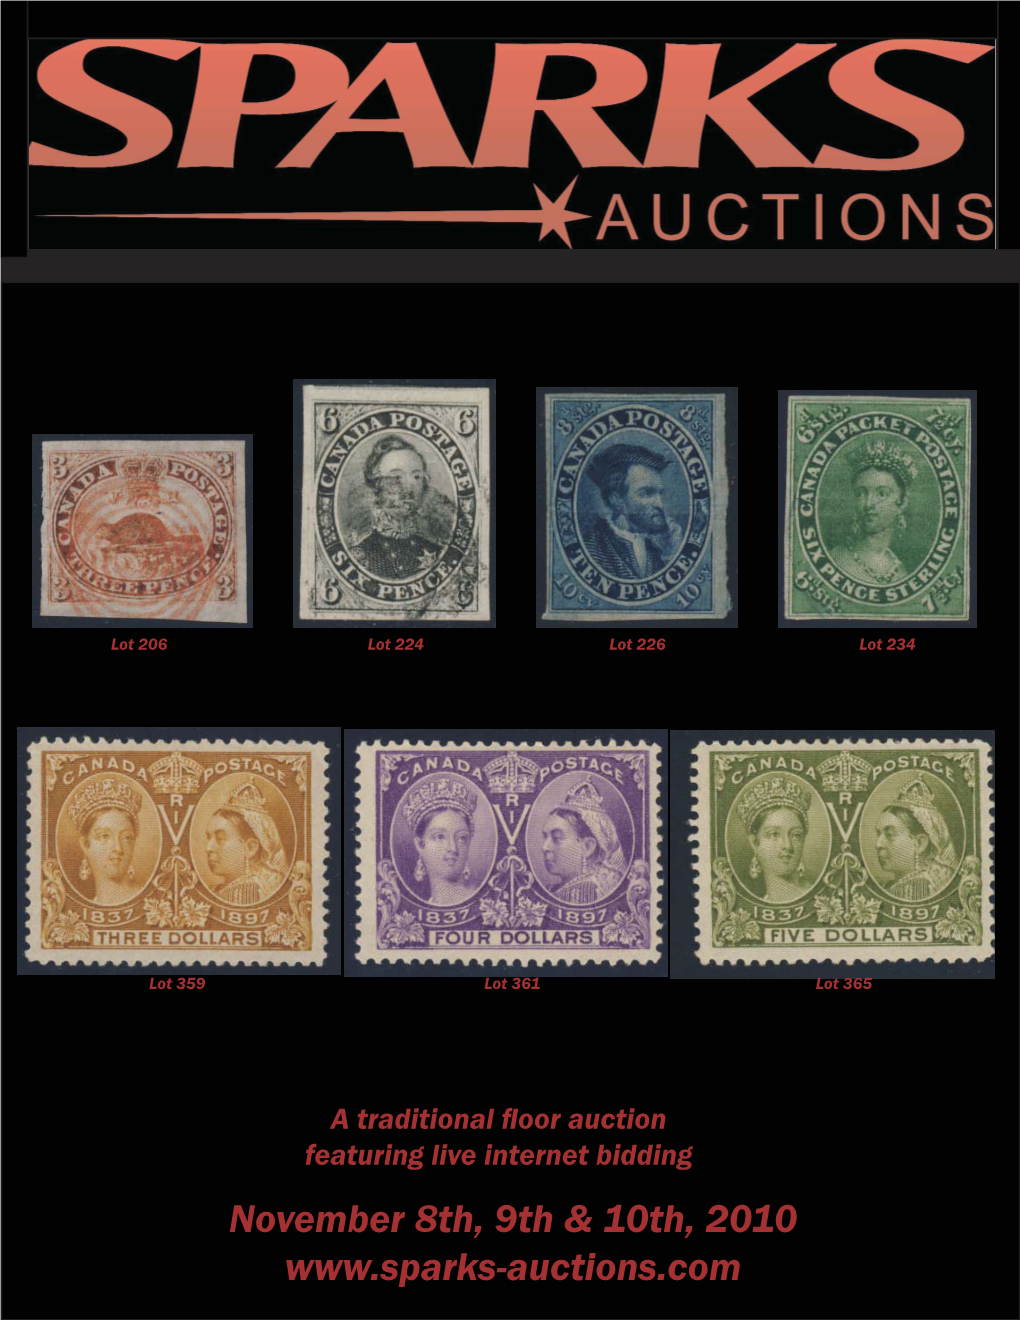 Auction #7, November 8-10, 2010